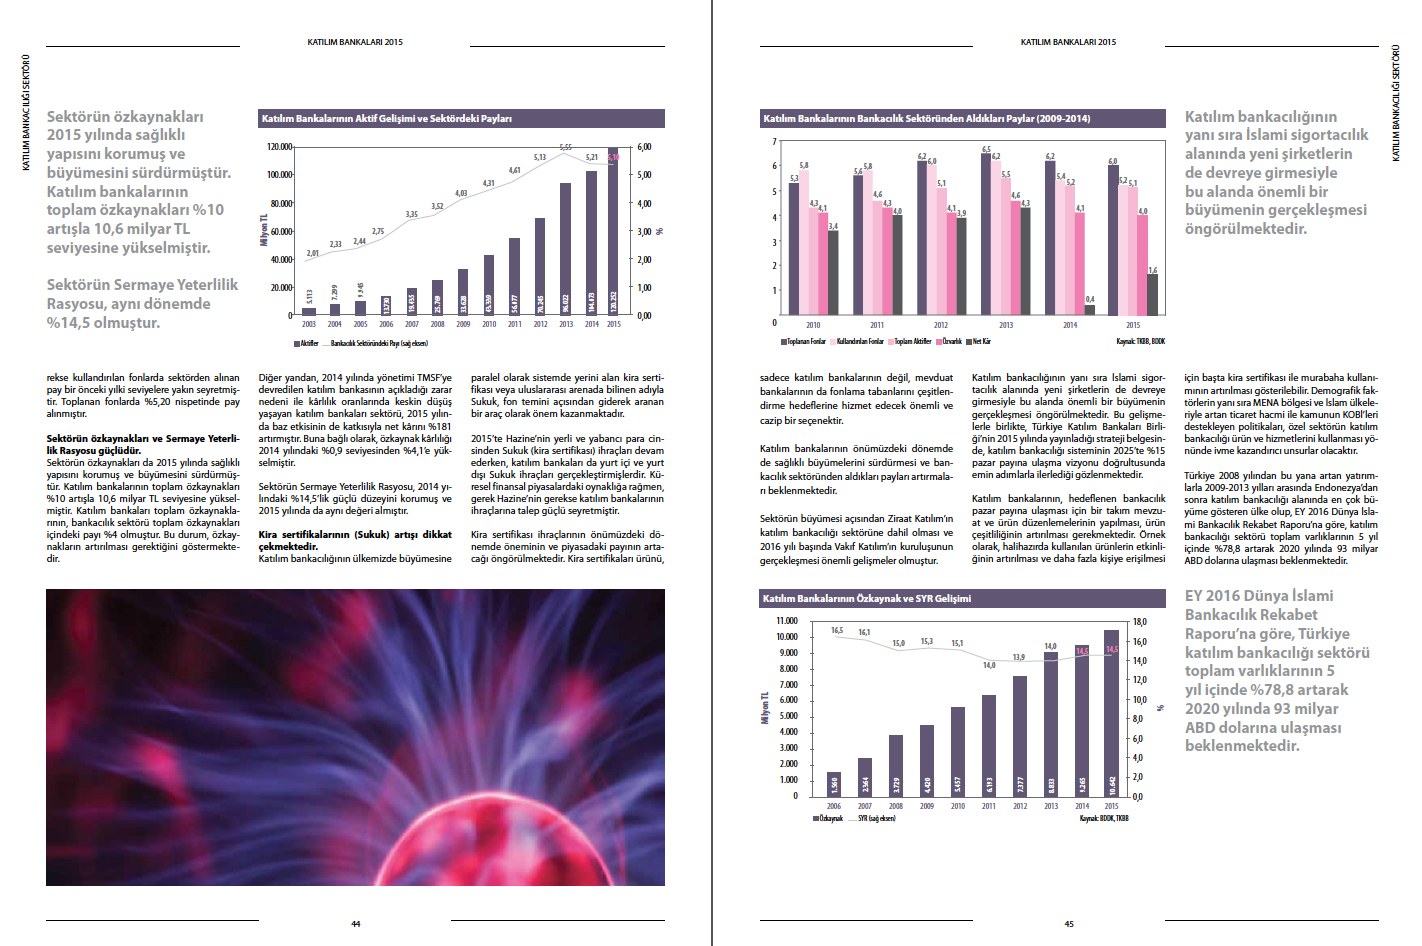 TÜRKİYE KATILIM BANKALARI BİRLİĞİ / 2015 Faaliyet Raporu / 2015 Annual Report